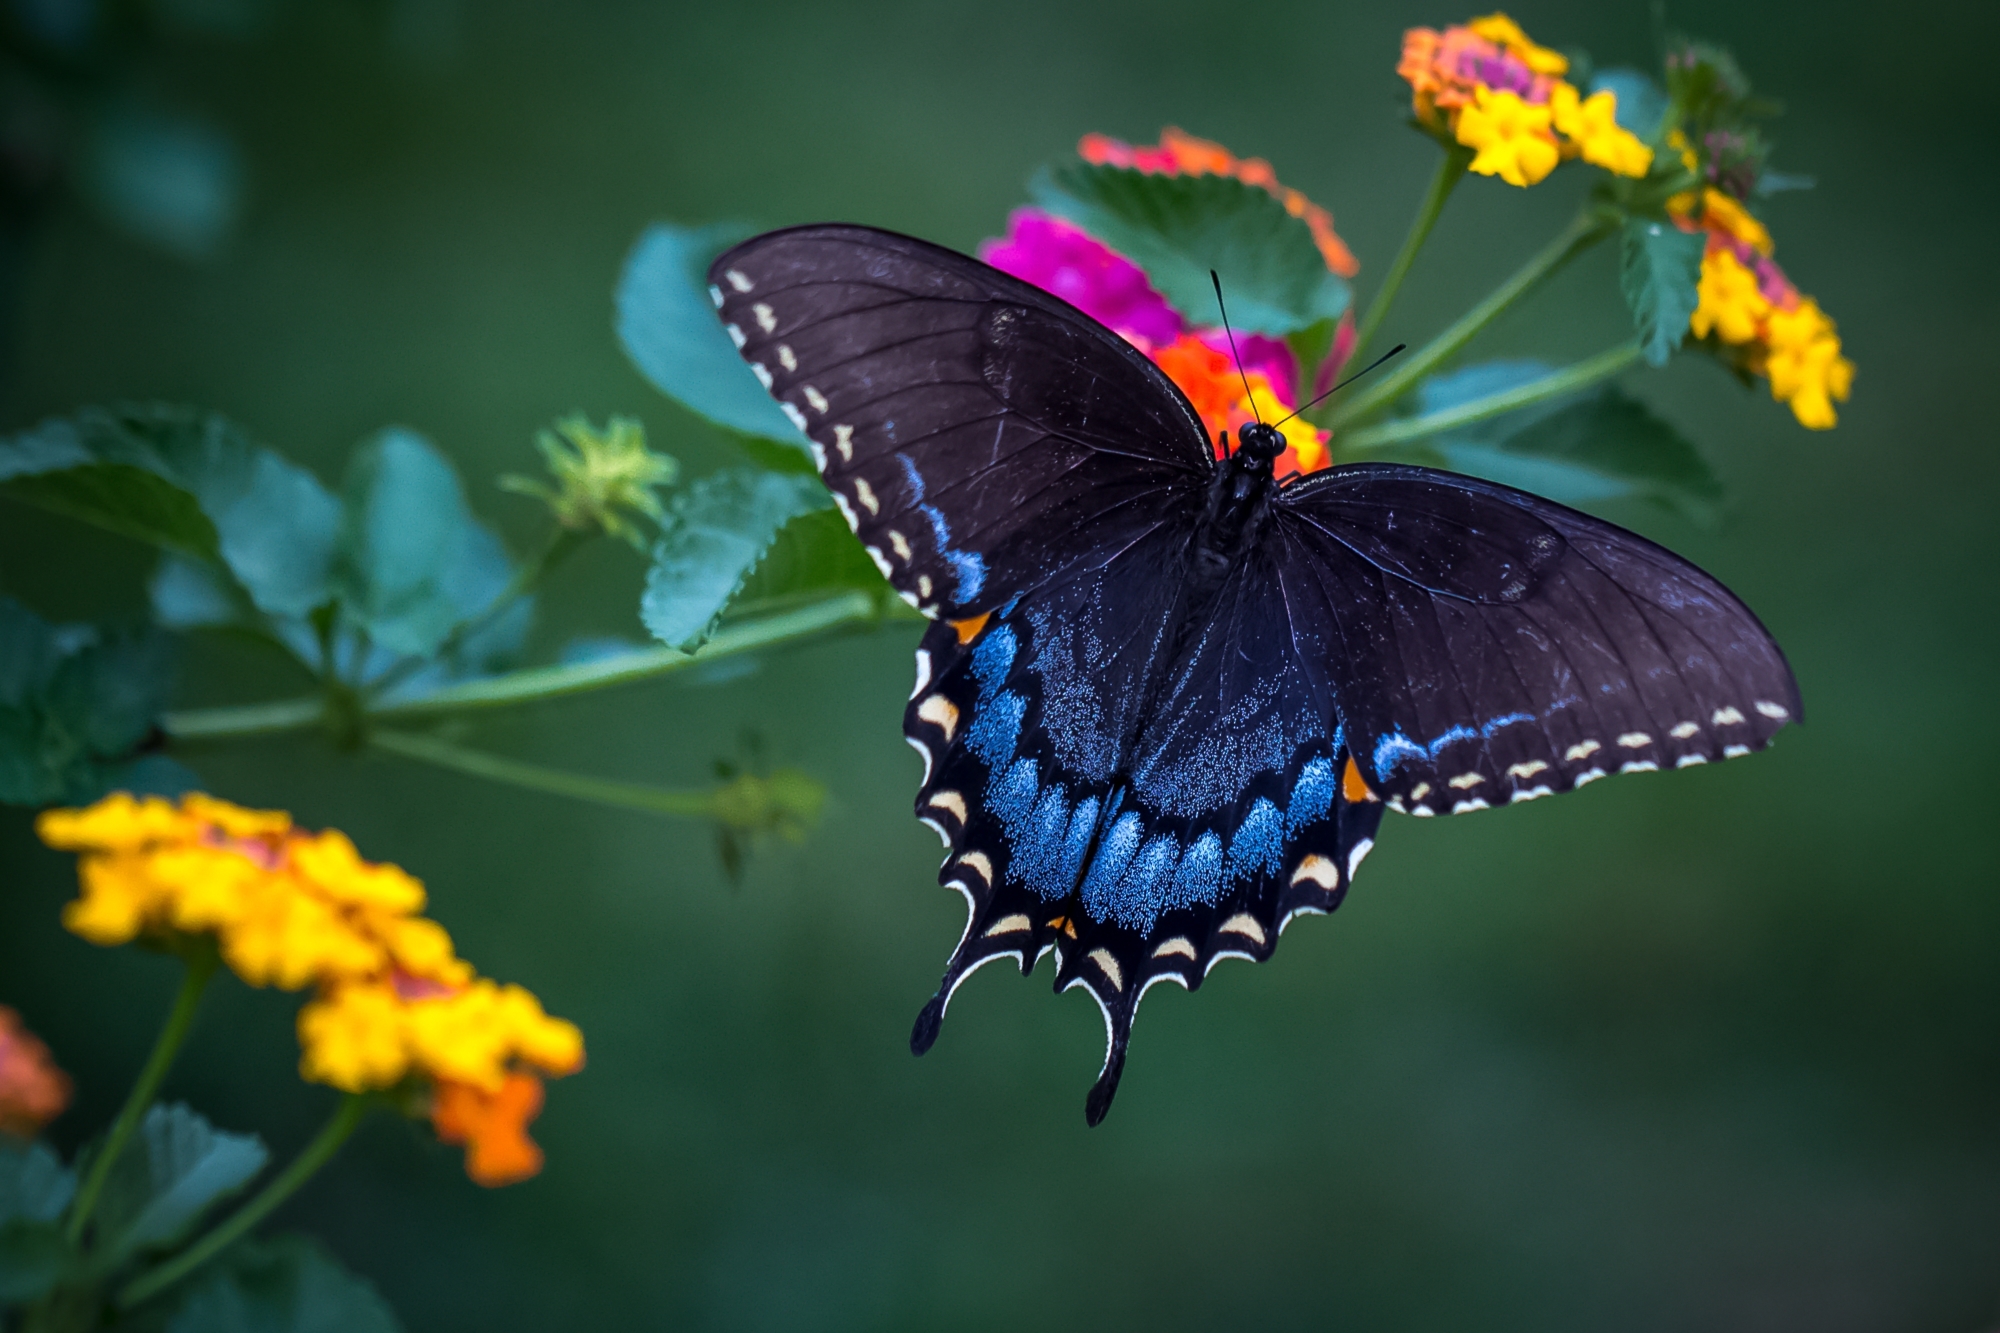 Descarga gratuita de fondo de pantalla para móvil de Animales, Flor, Insecto, Mariposa, Macrofotografía.